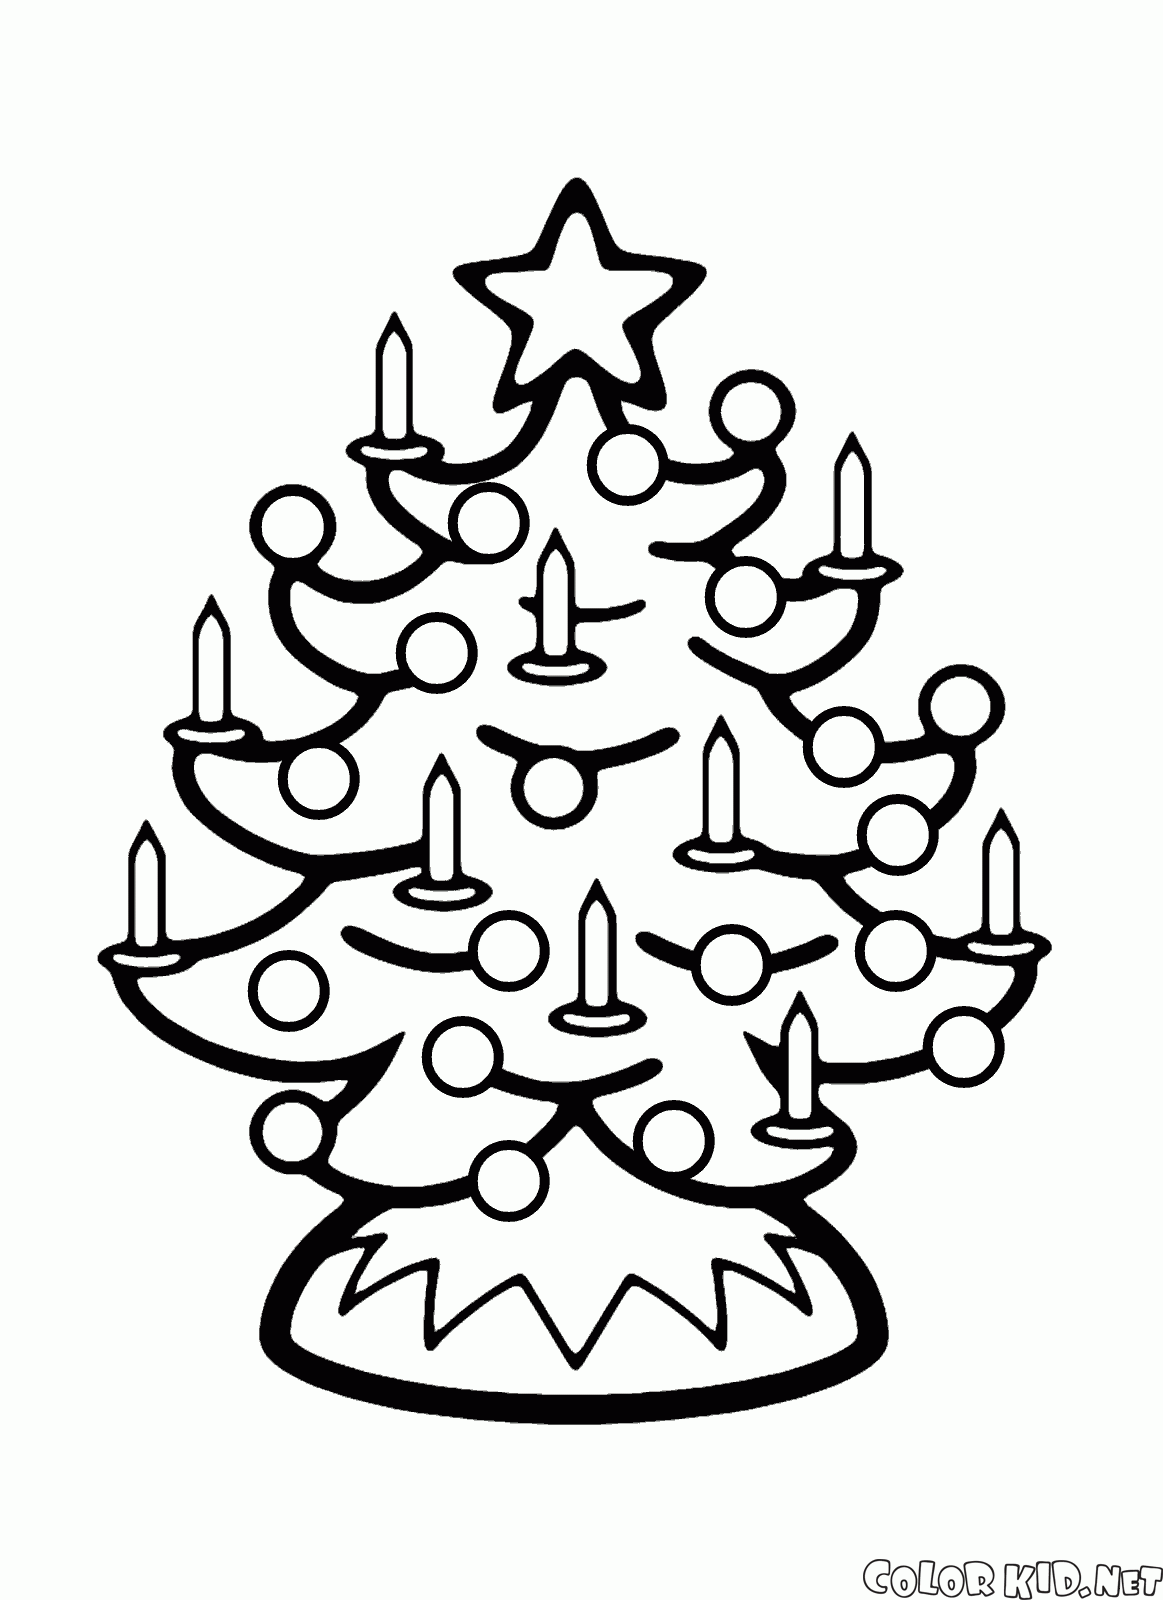 Las velas en el árbol de Navidad